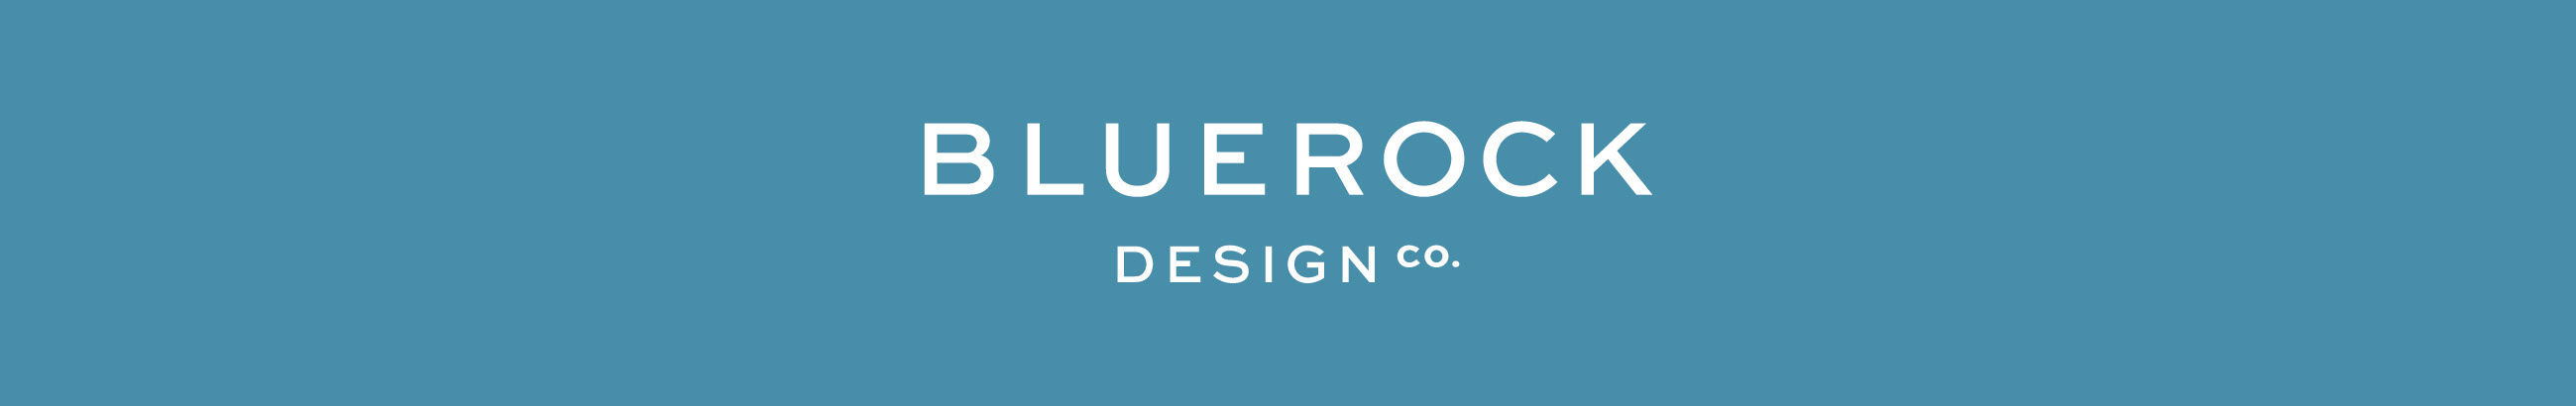 Баннер профиля Bluerock Design Co.